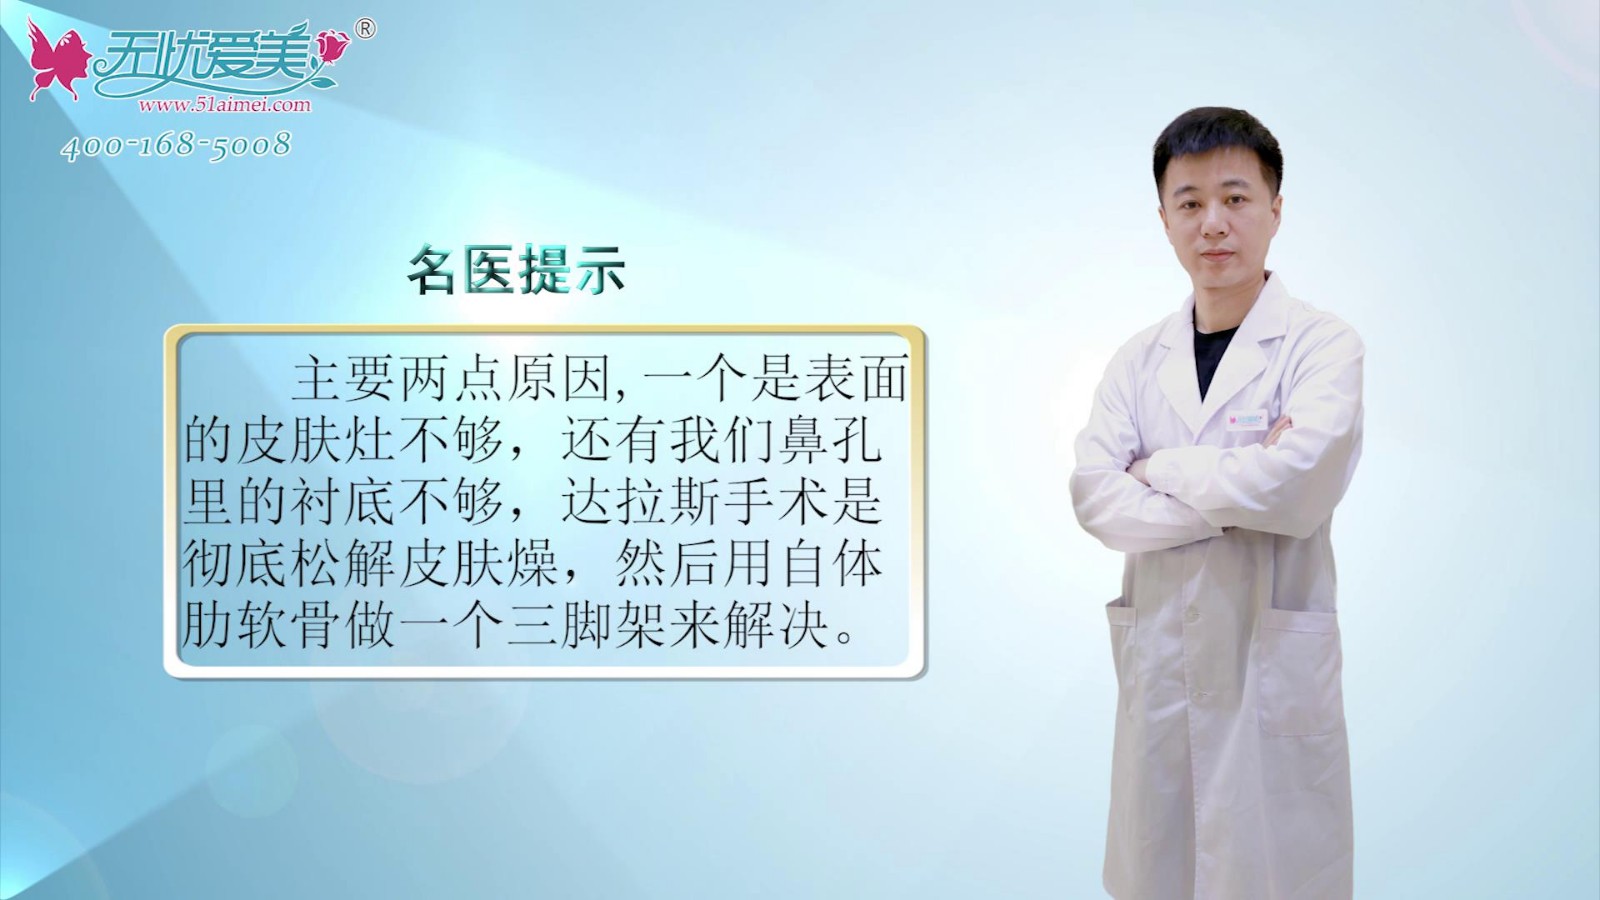 朝天鼻整形怎么做?来看视频南京鼻祖张哲医生分享矫正办法